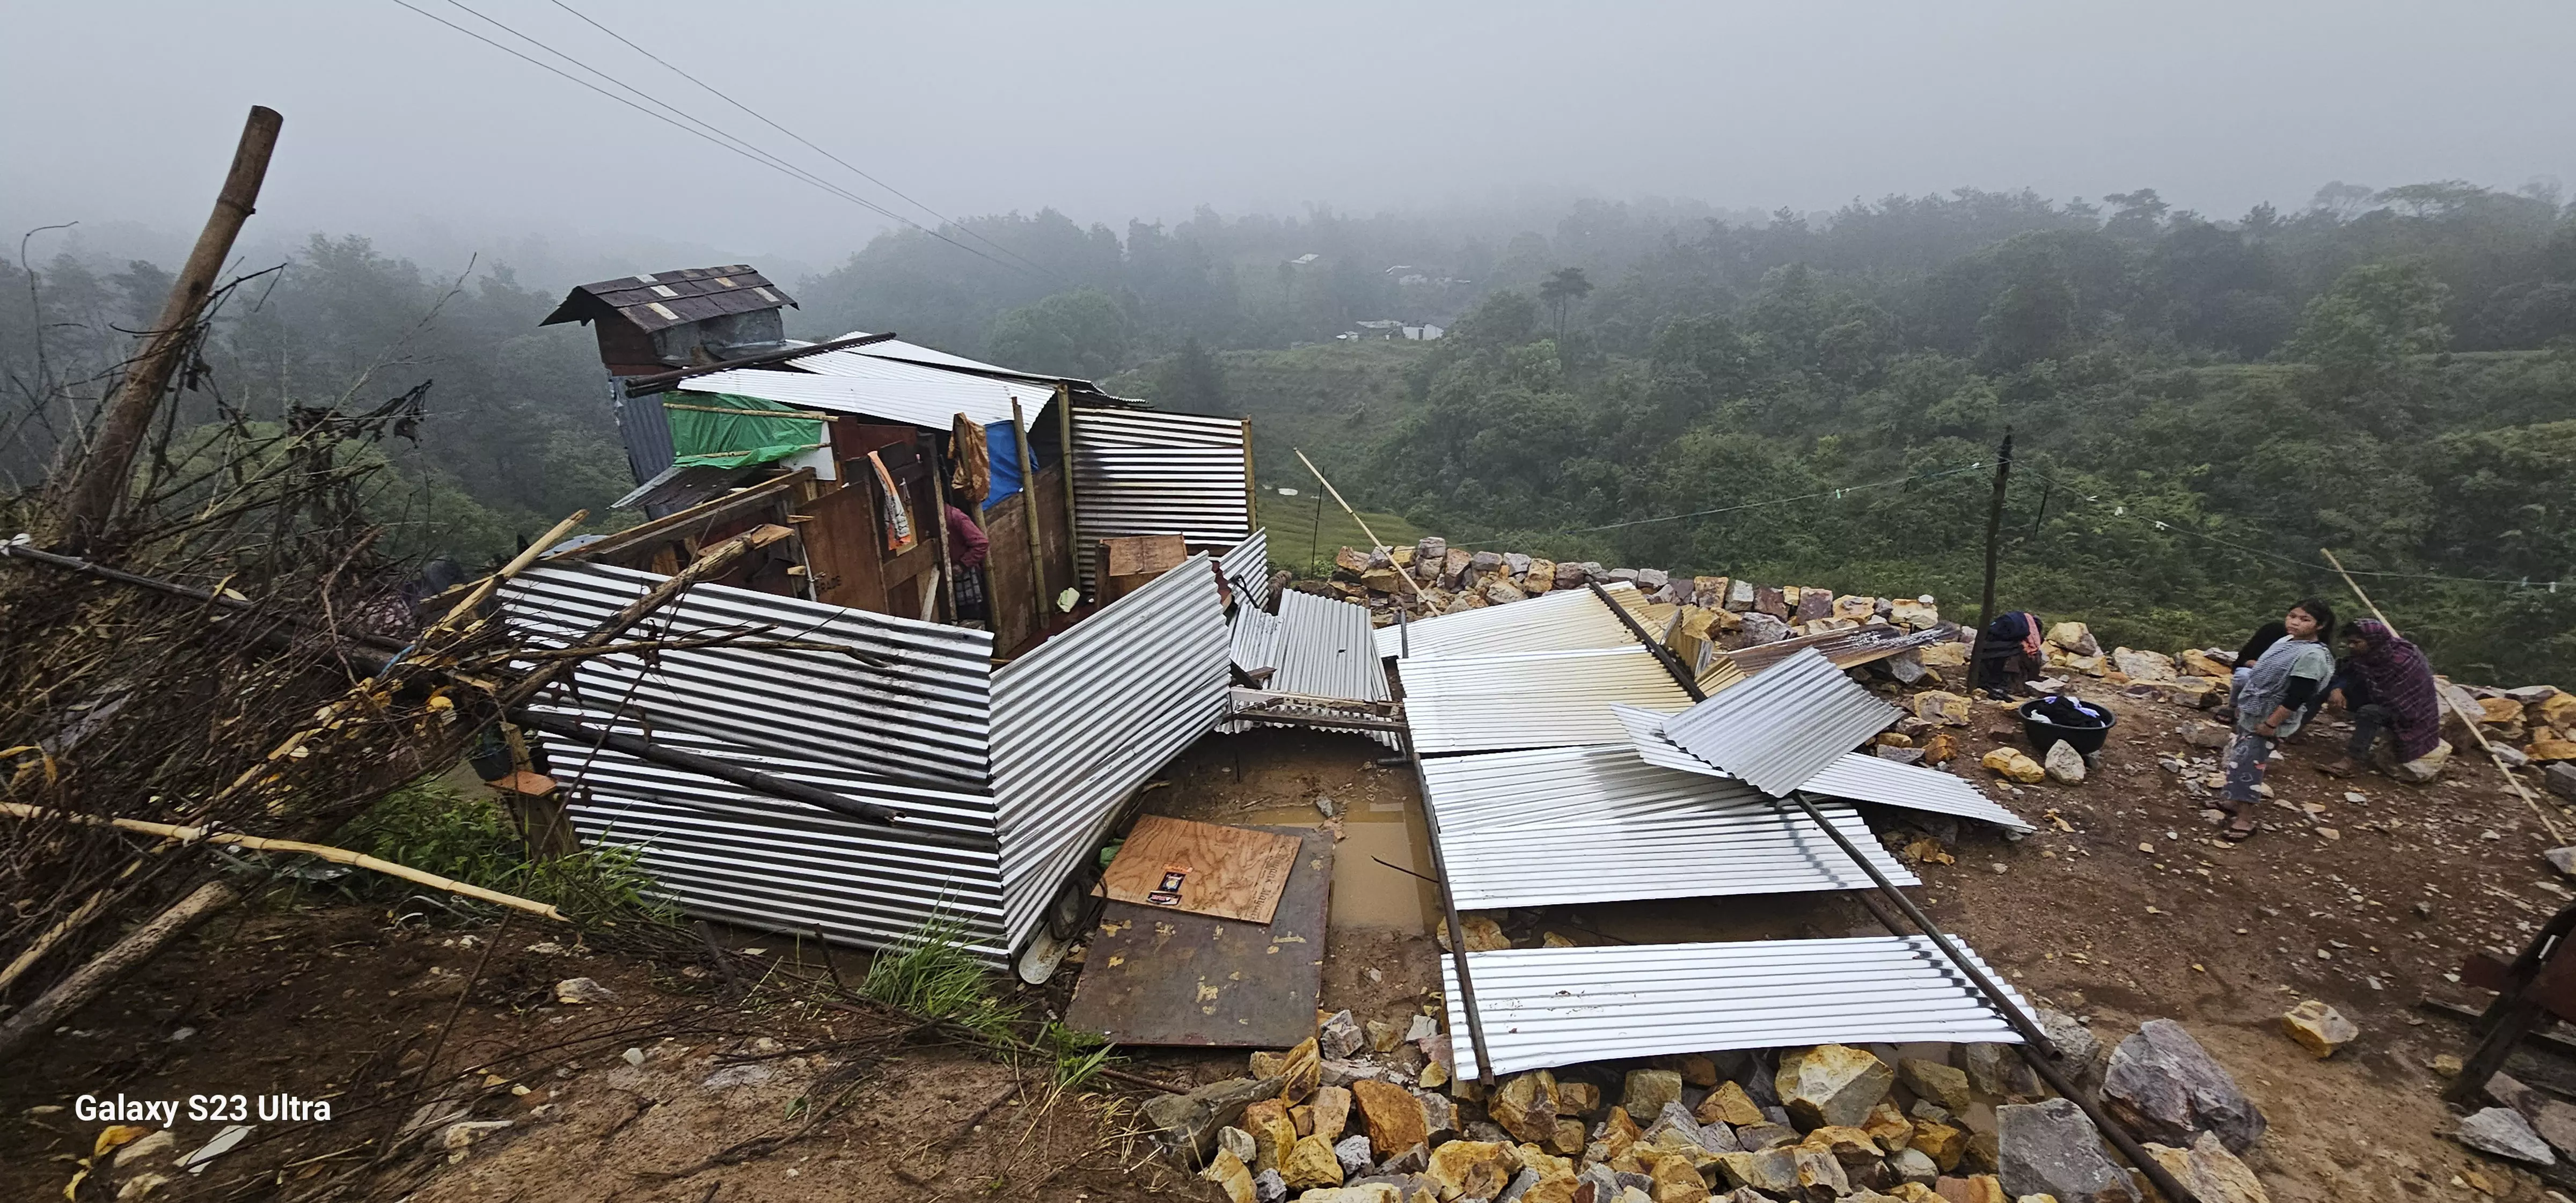 Rain, hailstorm wreak havoc in Meghalaya, Manipur; 400 hit, schools shut